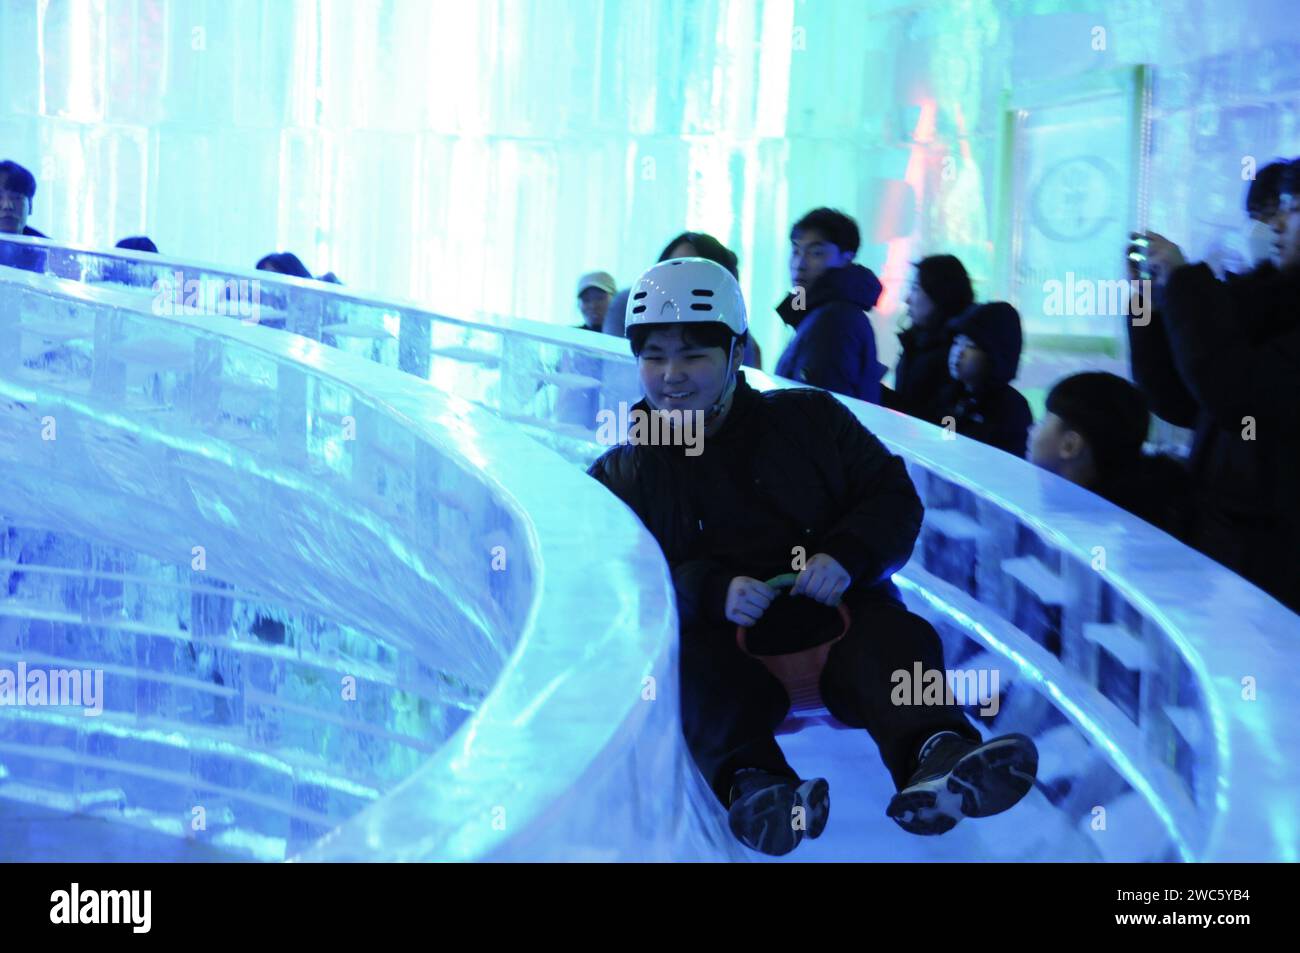 Province de Gangwon, Corée du Sud. 13 janvier 2024. Un touriste profite d’une glissade de glace réalisée par les sculpteurs de glace Harbin lors du festival de glace Hwacheon Sancheoneo dans la province de Gangwon, Corée du Sud, le 13 janvier 2024. Capitale de la province la plus septentrionale de la Chine, Heilongjiang, Harbin est réputée pour être le « joyau de la glace et de la neige » du pays. Cette année, les sculpteurs de glace de Harbin ont été invités à créer des sculptures de glace pour le festival de glace de Hwacheon Sancheoneo, l'un des festivals d'hiver sud-coréens les plus populaires. Crédit : Yang Chang/Xinhua/Alamy Live News Banque D'Images